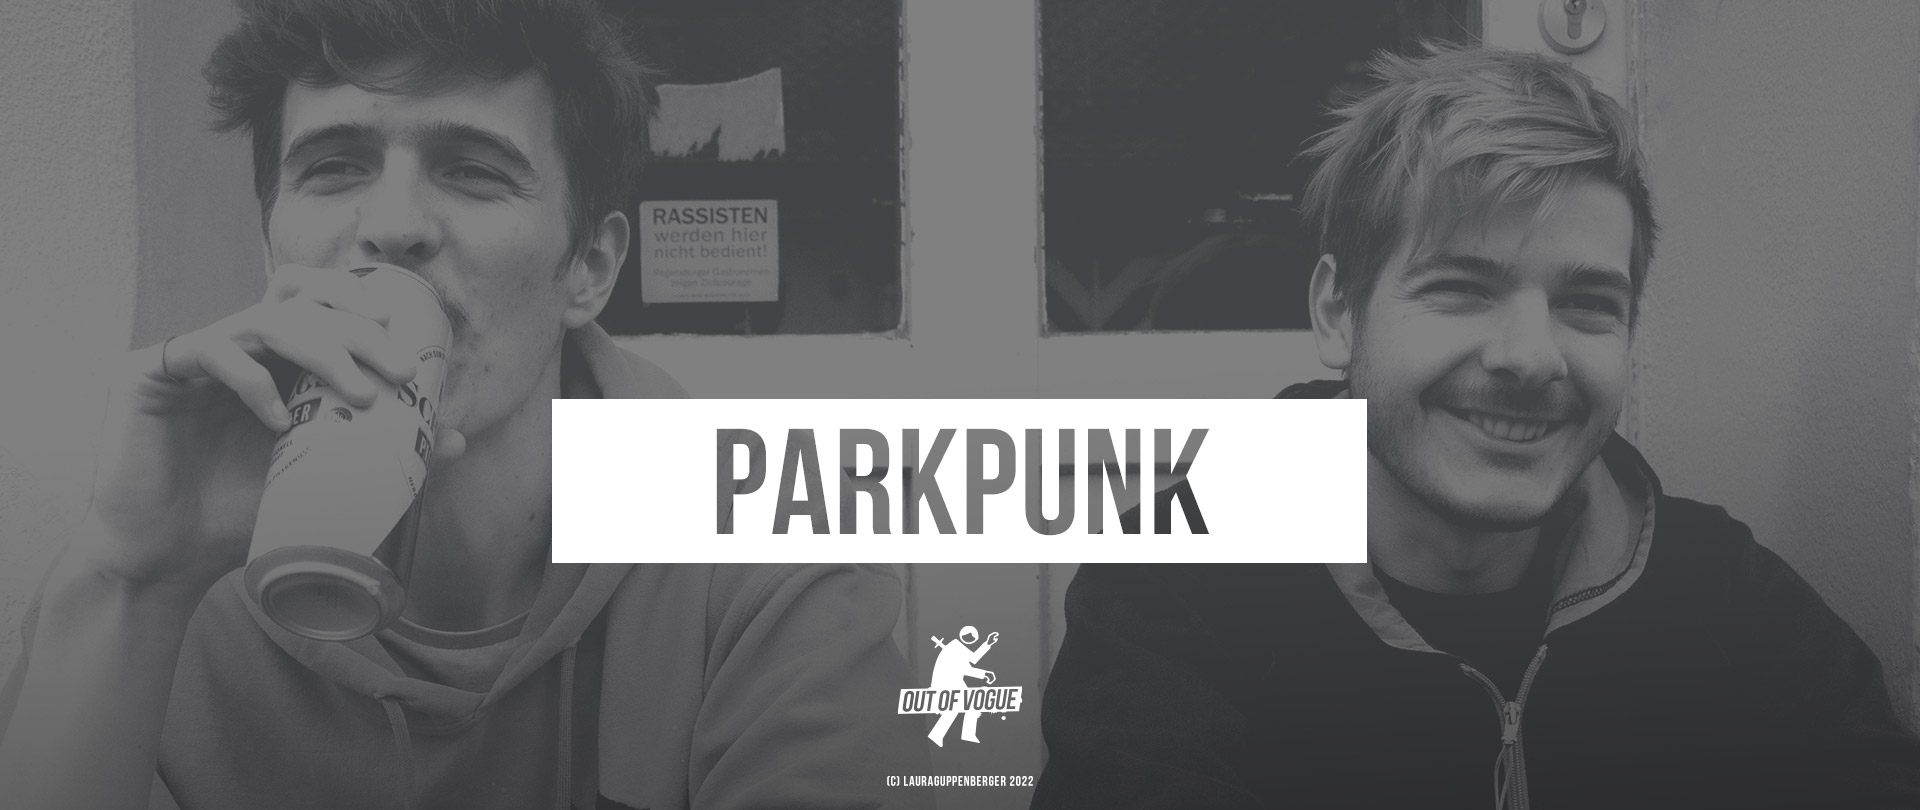 ParkPunk at OUT OF VOGUE SHOP / EN